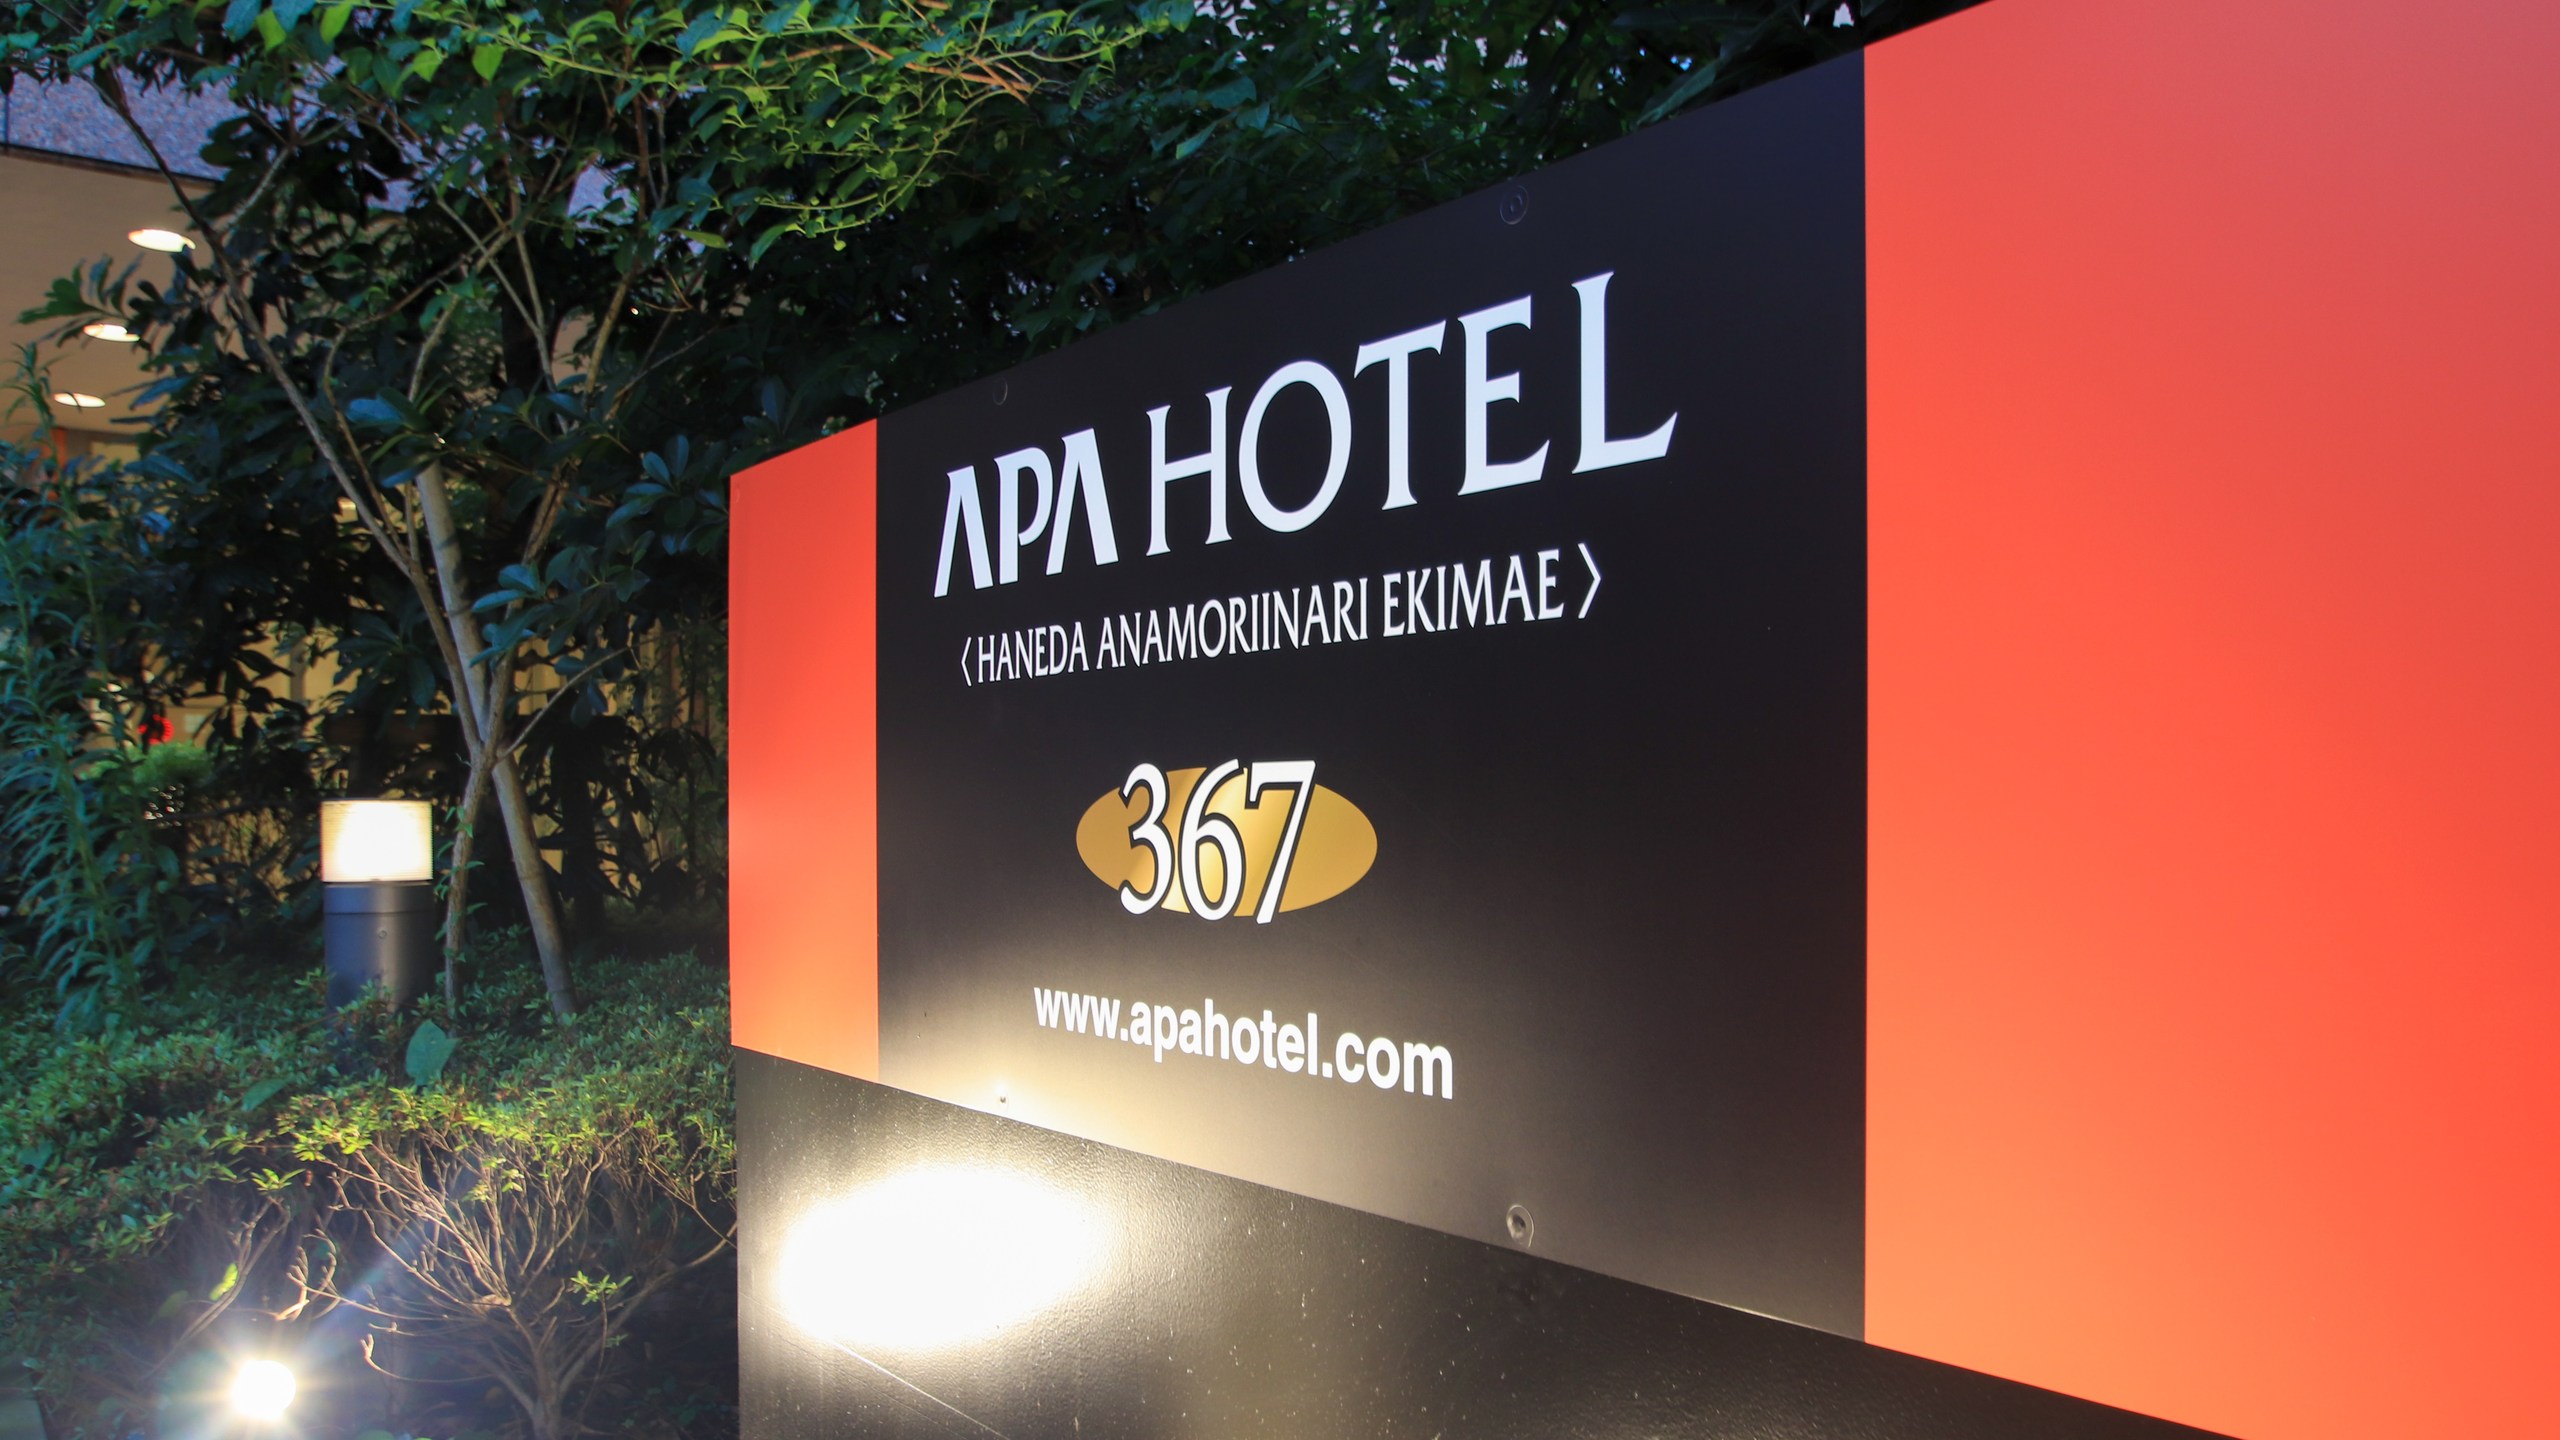 APA Hotel Haneda Anamori Inari-Ekimae